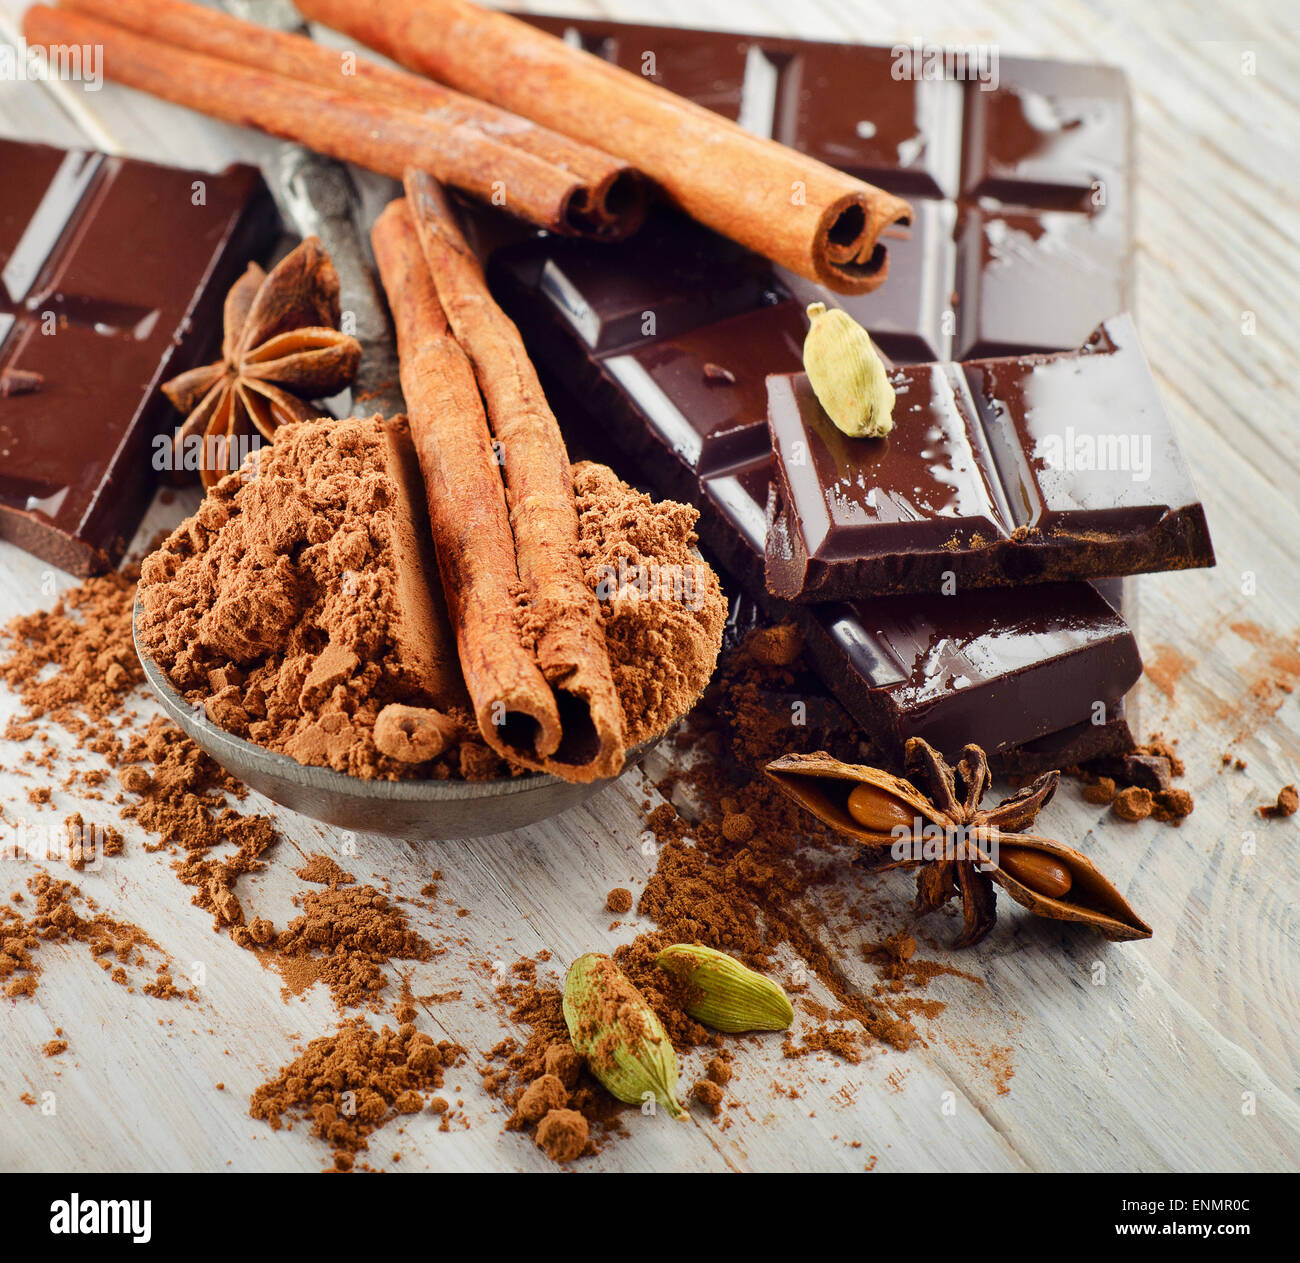 Broken barre de chocolat et le cacao en poudre sur une planche de bois. Selective focus Banque D'Images